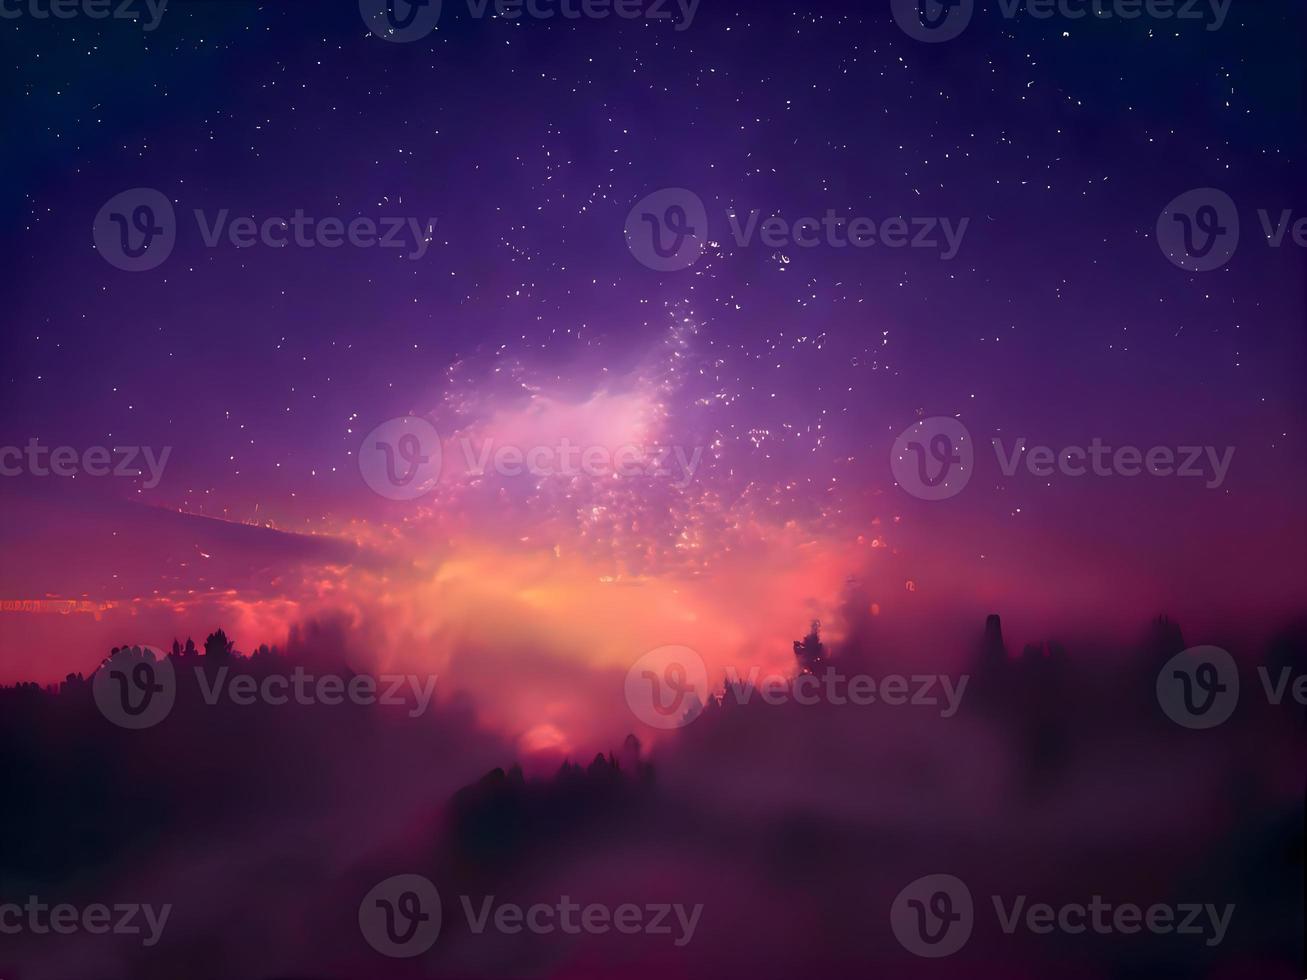 kleurrijke kosmische achtergrond met licht, stralende sterren, sterrenstof en nevel. foto voor illustraties, feestfolders, posters, banners